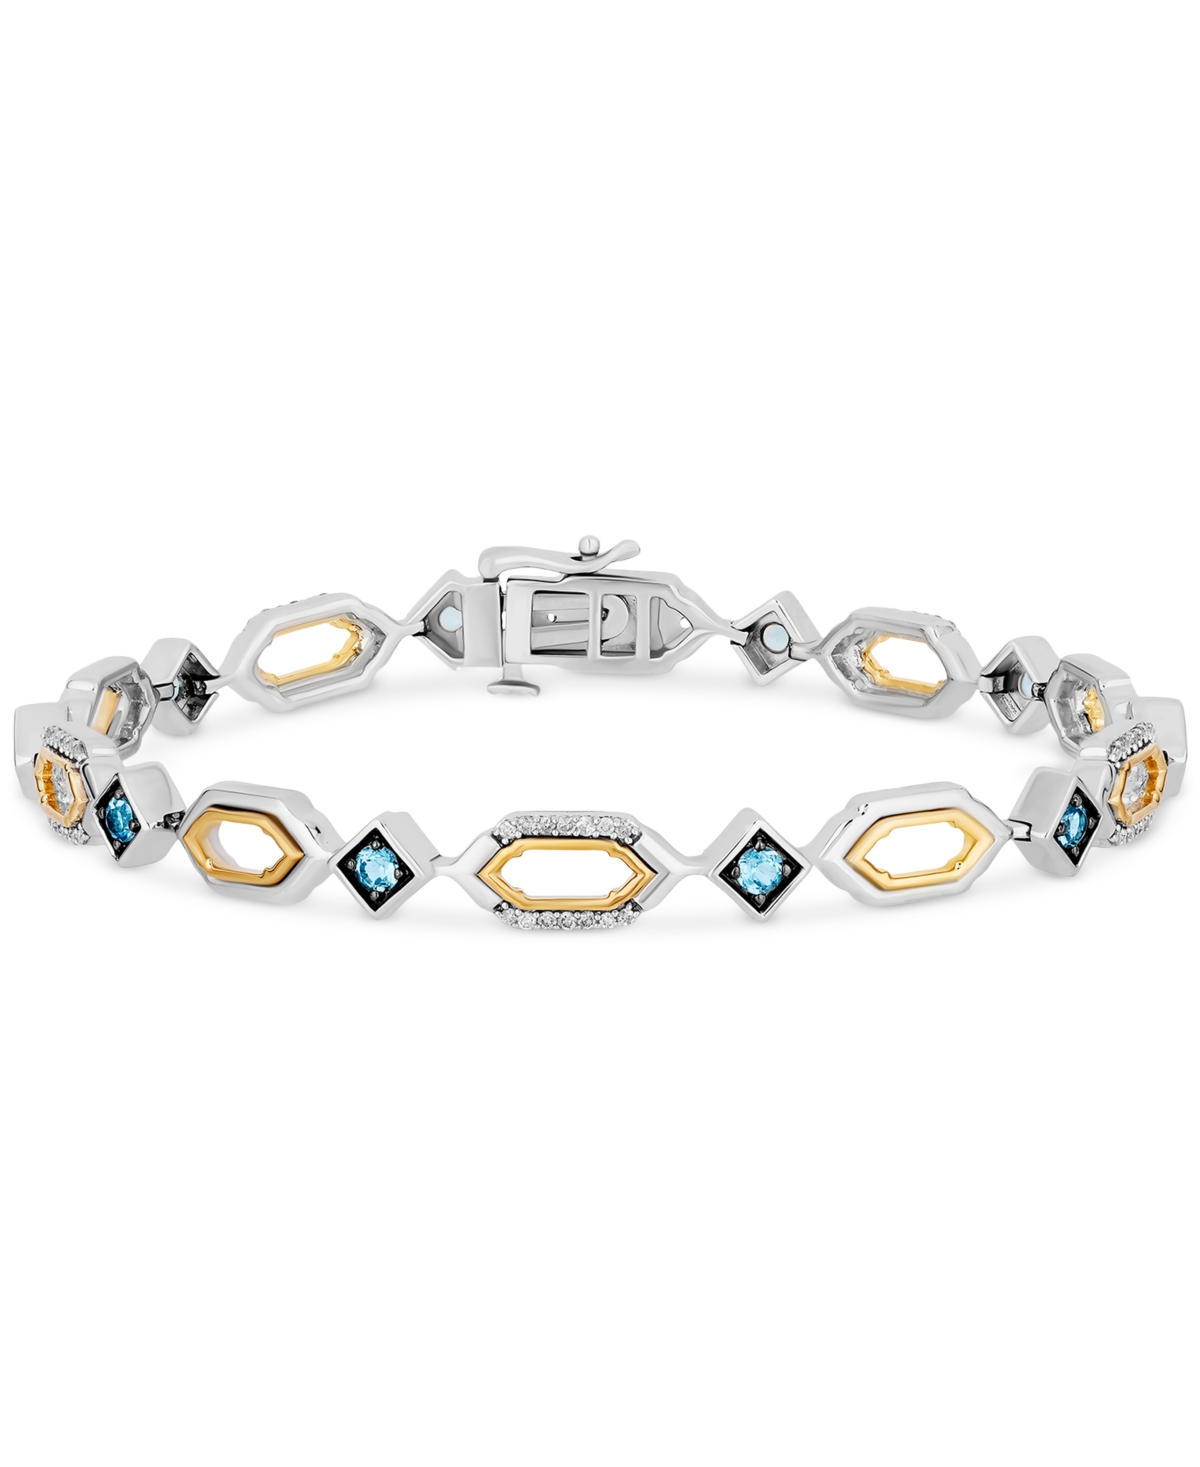 Enchanted Disney Fine Jewelry Blue Topaz (1/20 ct. t.w.) & Diamond (1/4 ct. t.w.) Jasmine Open Link Bracelet in 14k Gold, Sterling Silver, & Black Rhodium-Plate